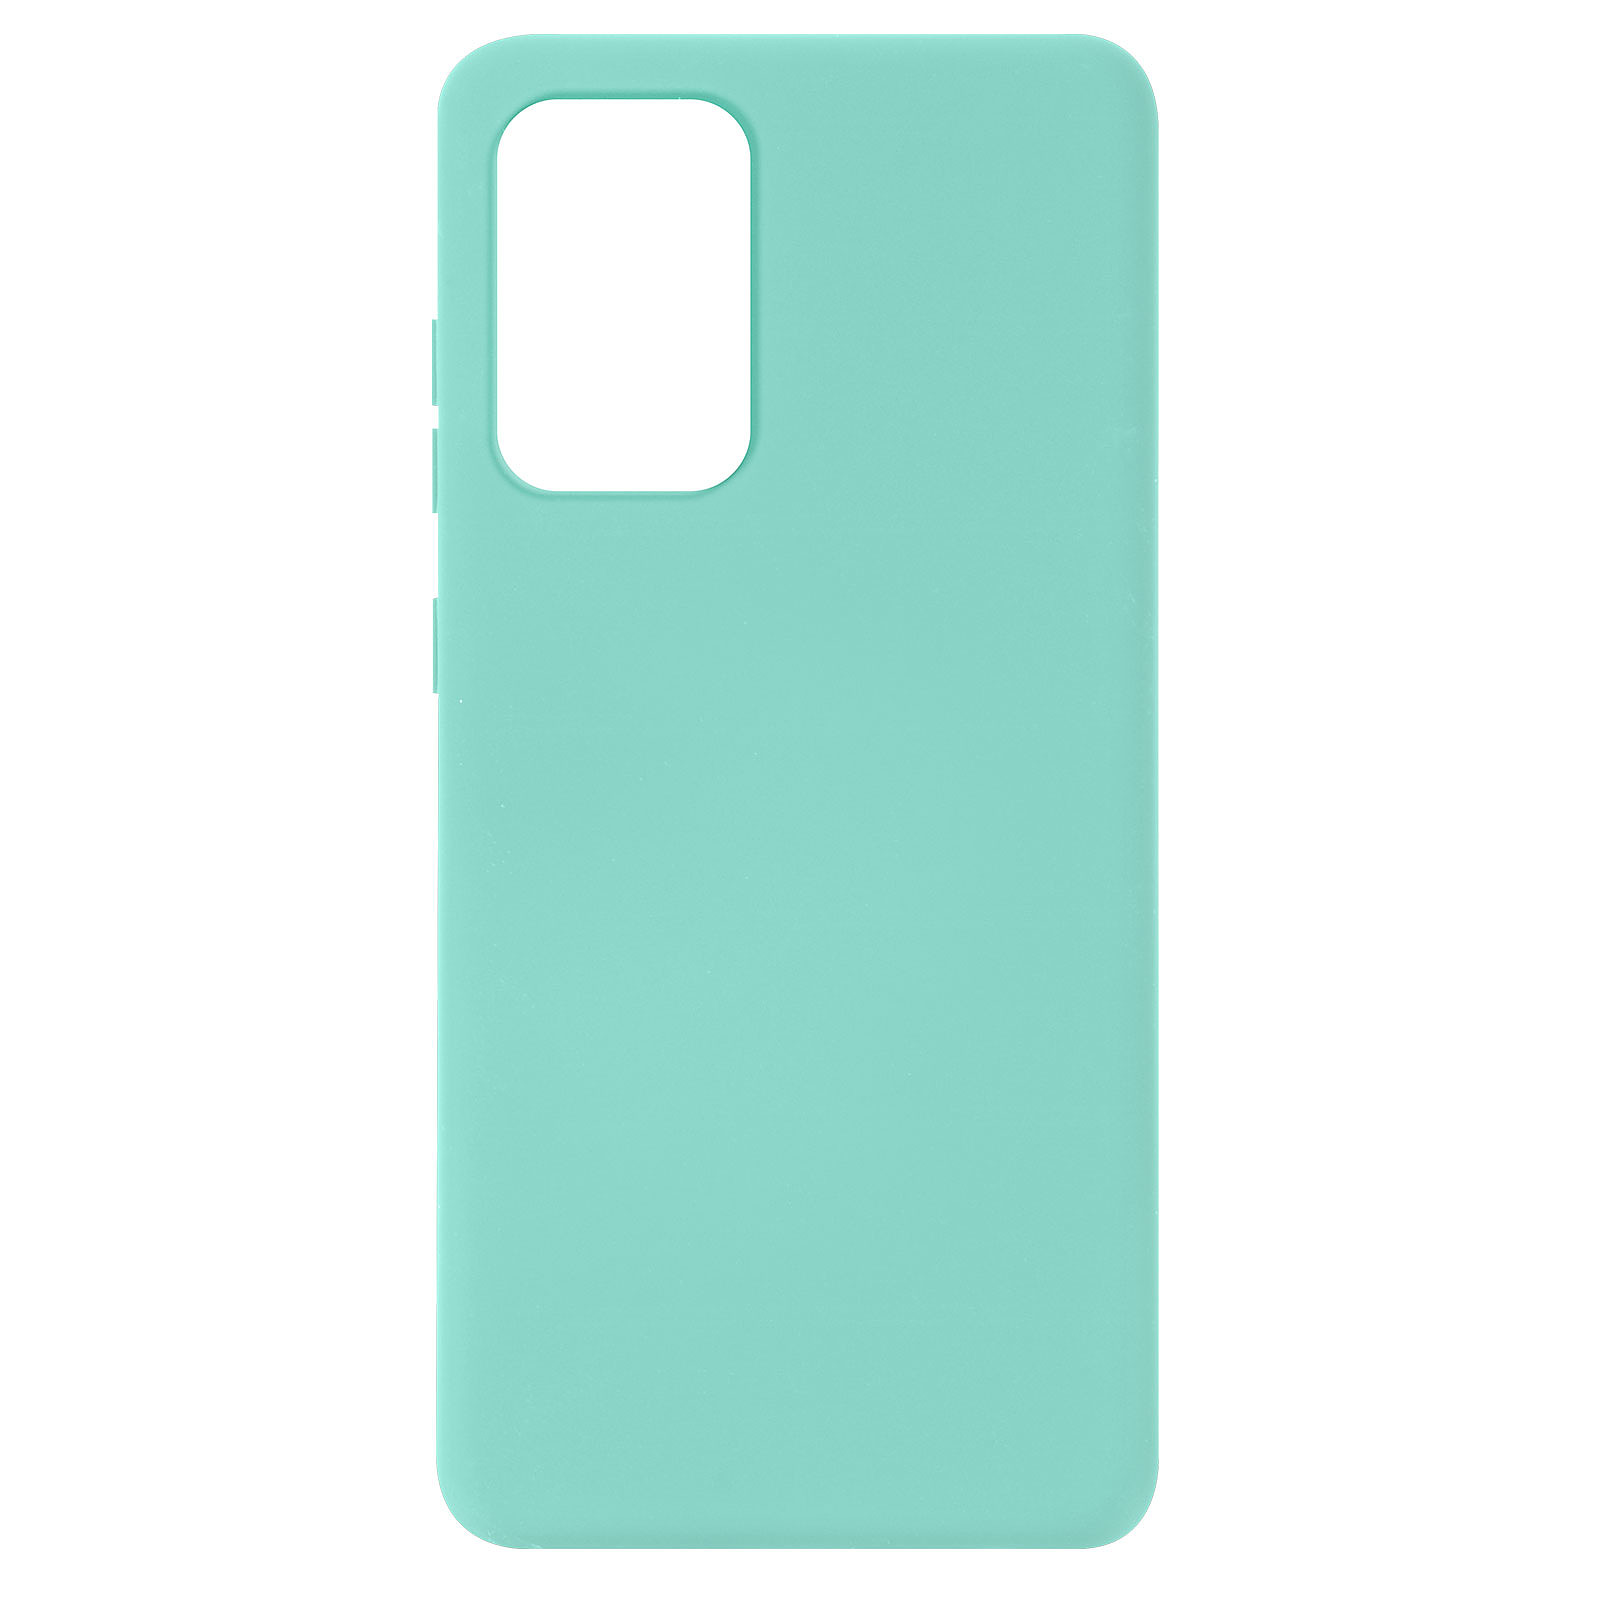 Avizar Coque pour Samsung Galaxy A72 Silicone Semi-rigide Finition Soft Touch Fine Turquoise - Coque telephone Avizar